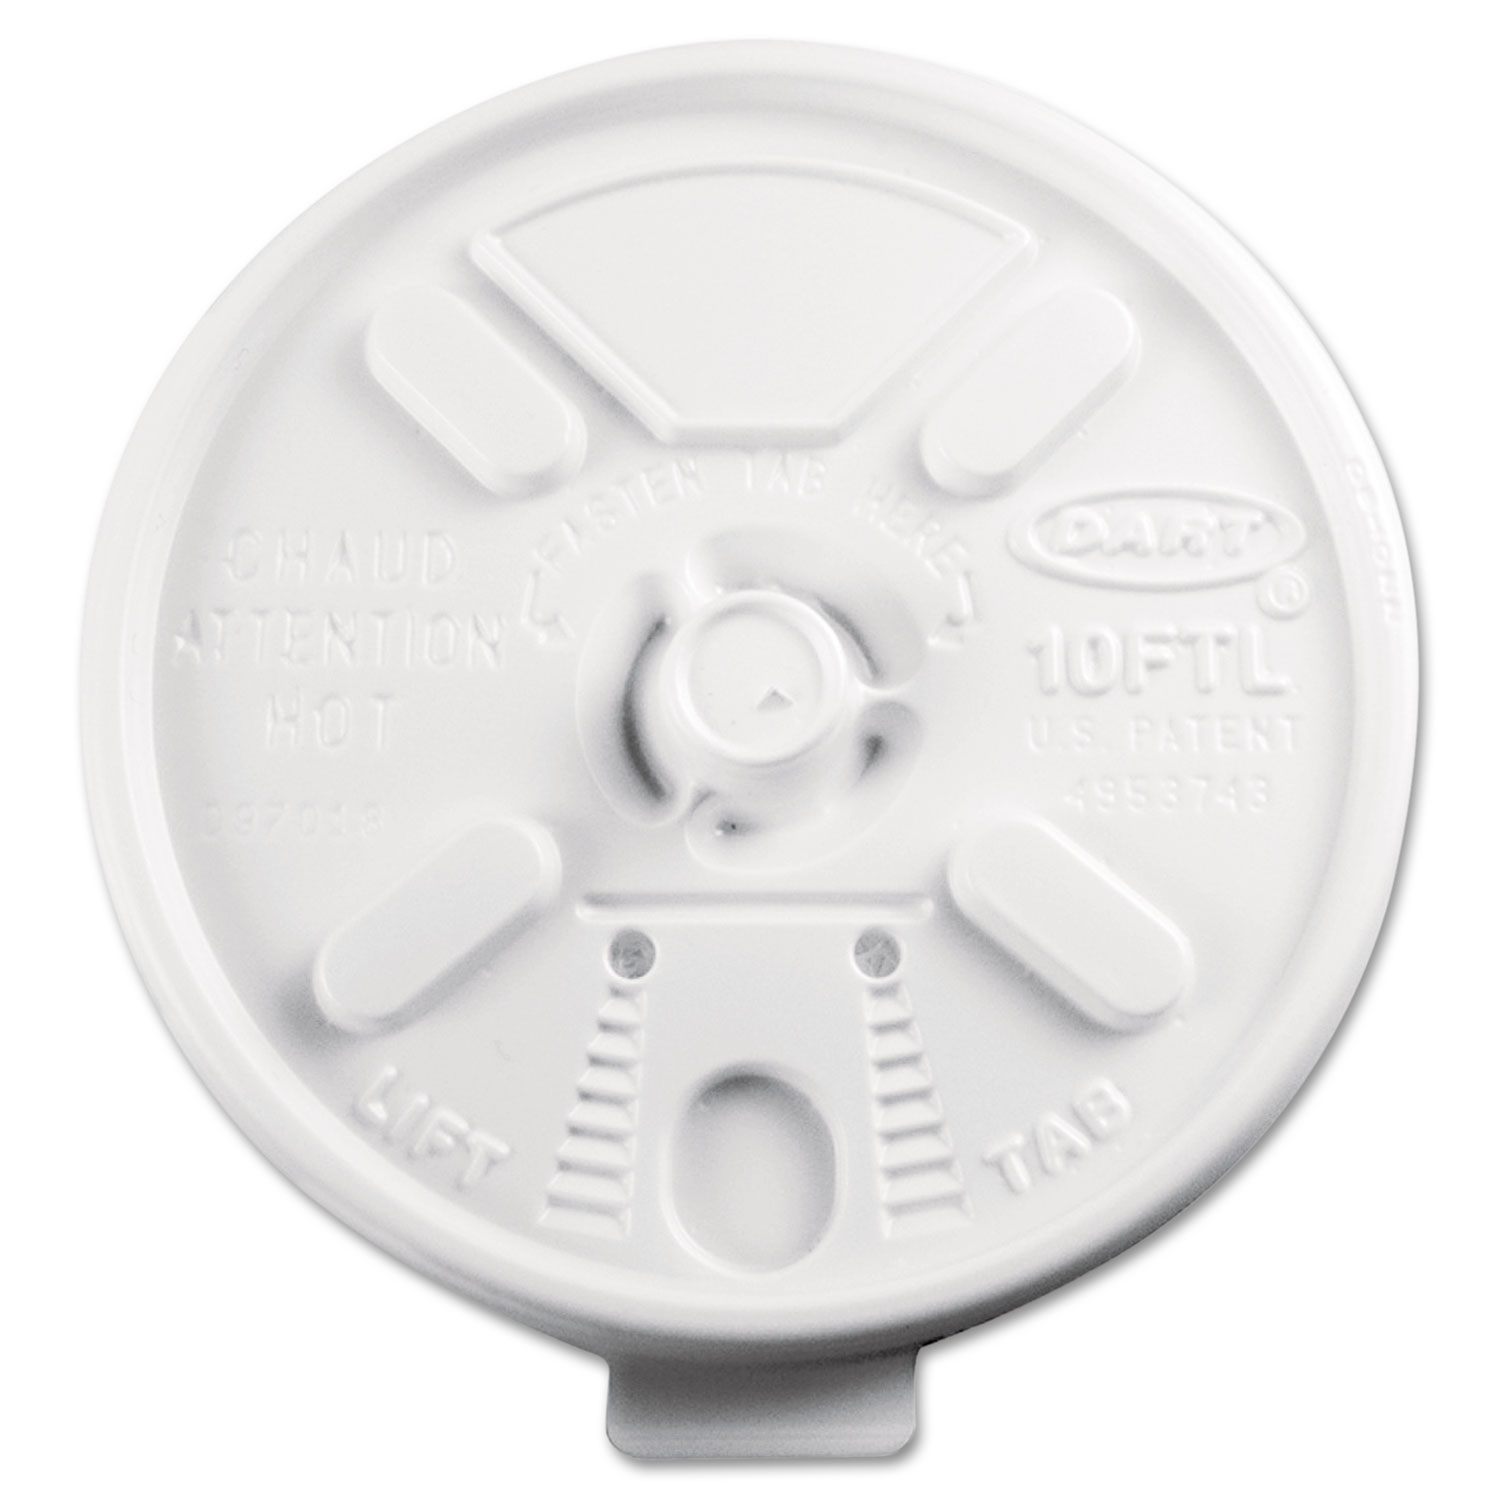  Dart 10FTL Lift N' Lock Plastic Hot Cup Lids, Fits 10oz Cups, White, 1000/Carton (DCC10FTL) 